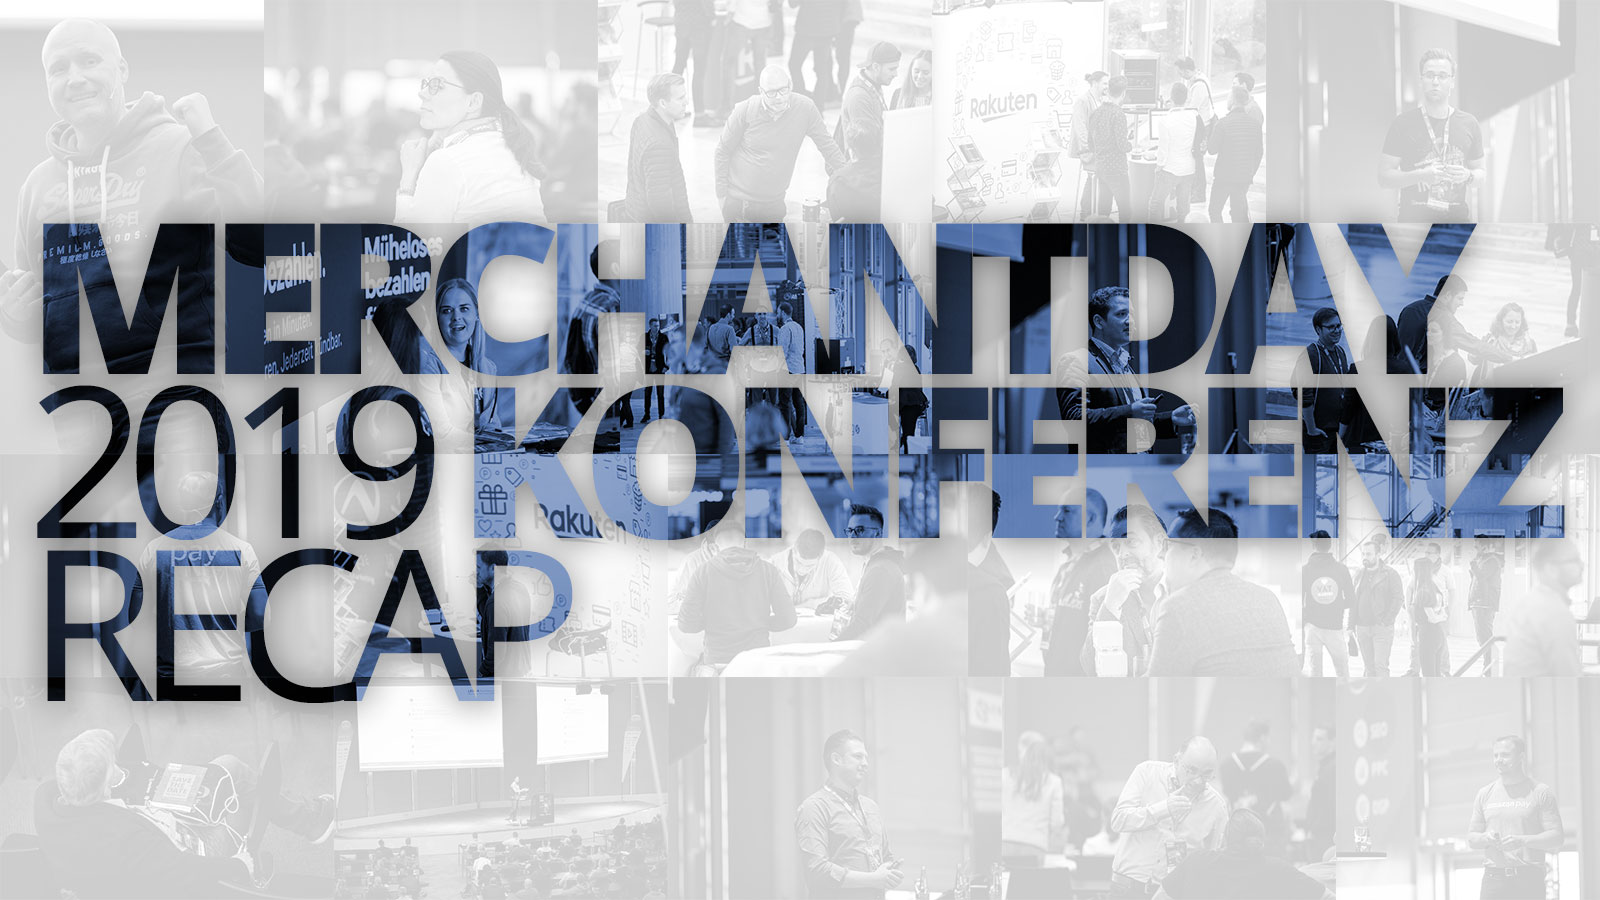 merchantday-2019-konferenz-recap